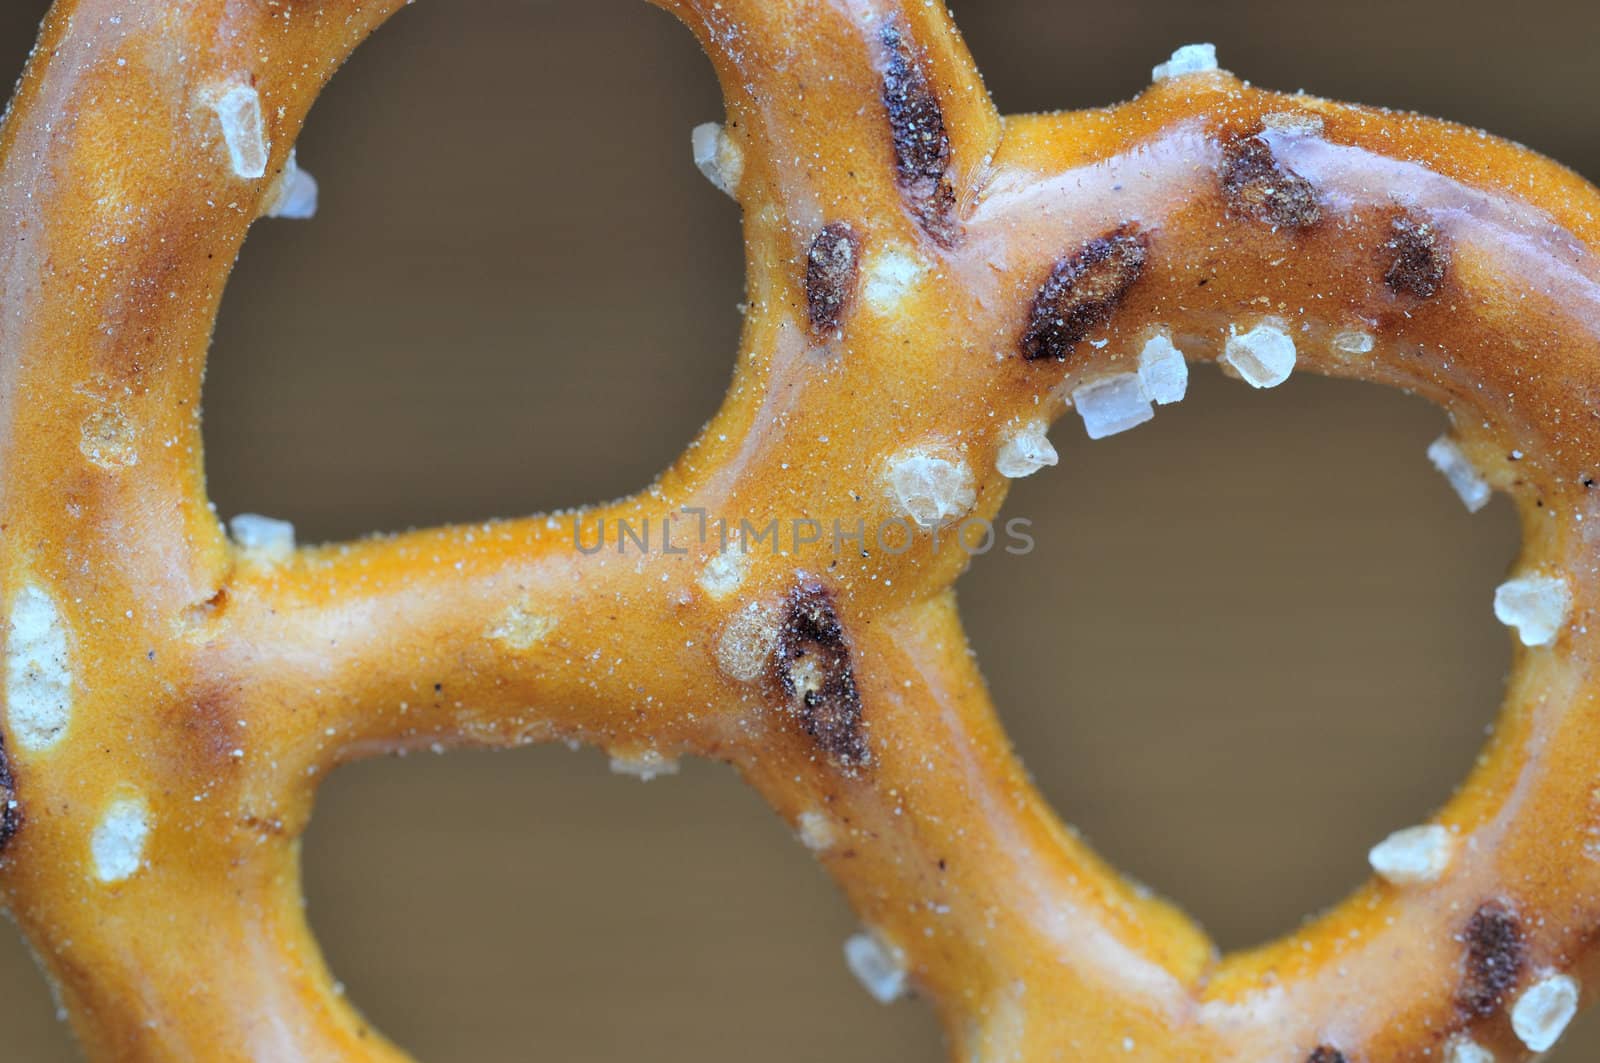 Macro shot of a pretzel with salt cyrstals.